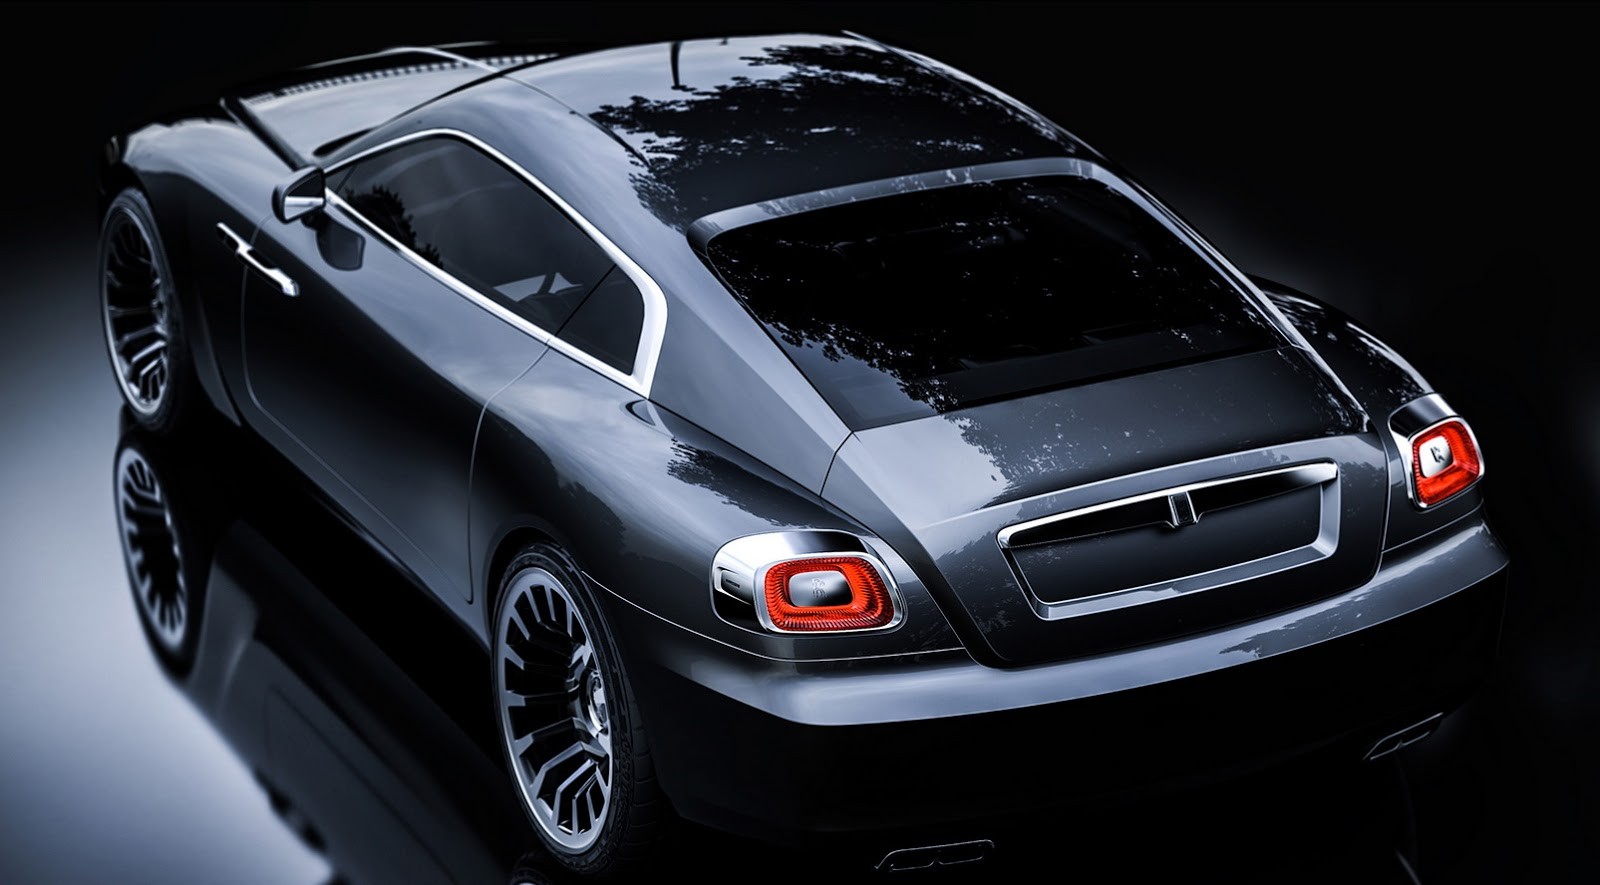 Render: Jak by mohl vypadat Rolls-Royce Wraith v roce 2020?